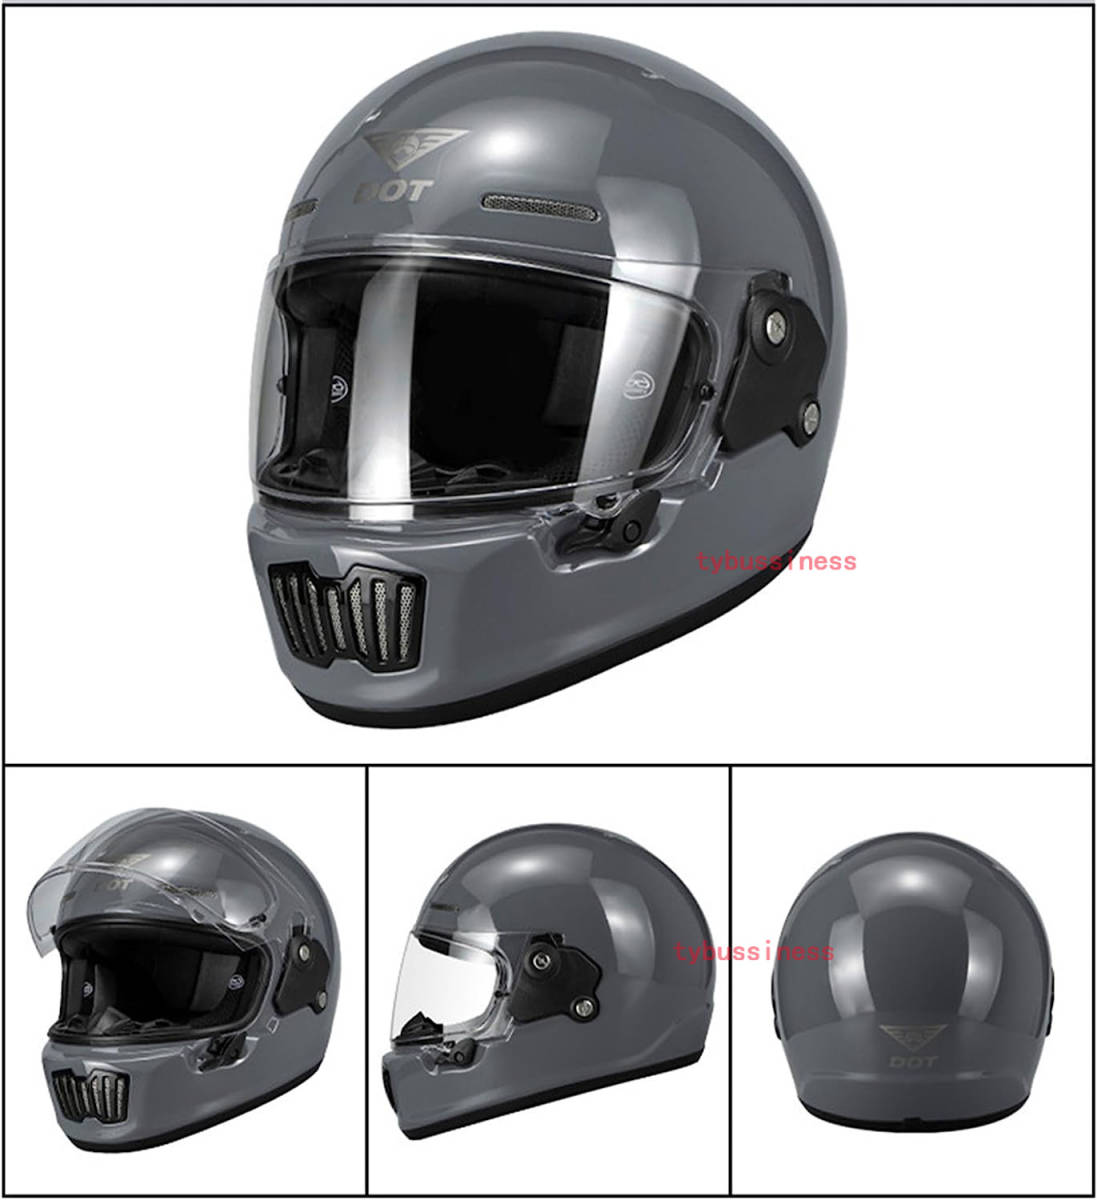 新入荷バイク用ヘルメット ハーレーレトロヘルメット フルフェイスヘルメット 名入れ クールバイカーレーシングク ピッグノーズヘルメットの画像2